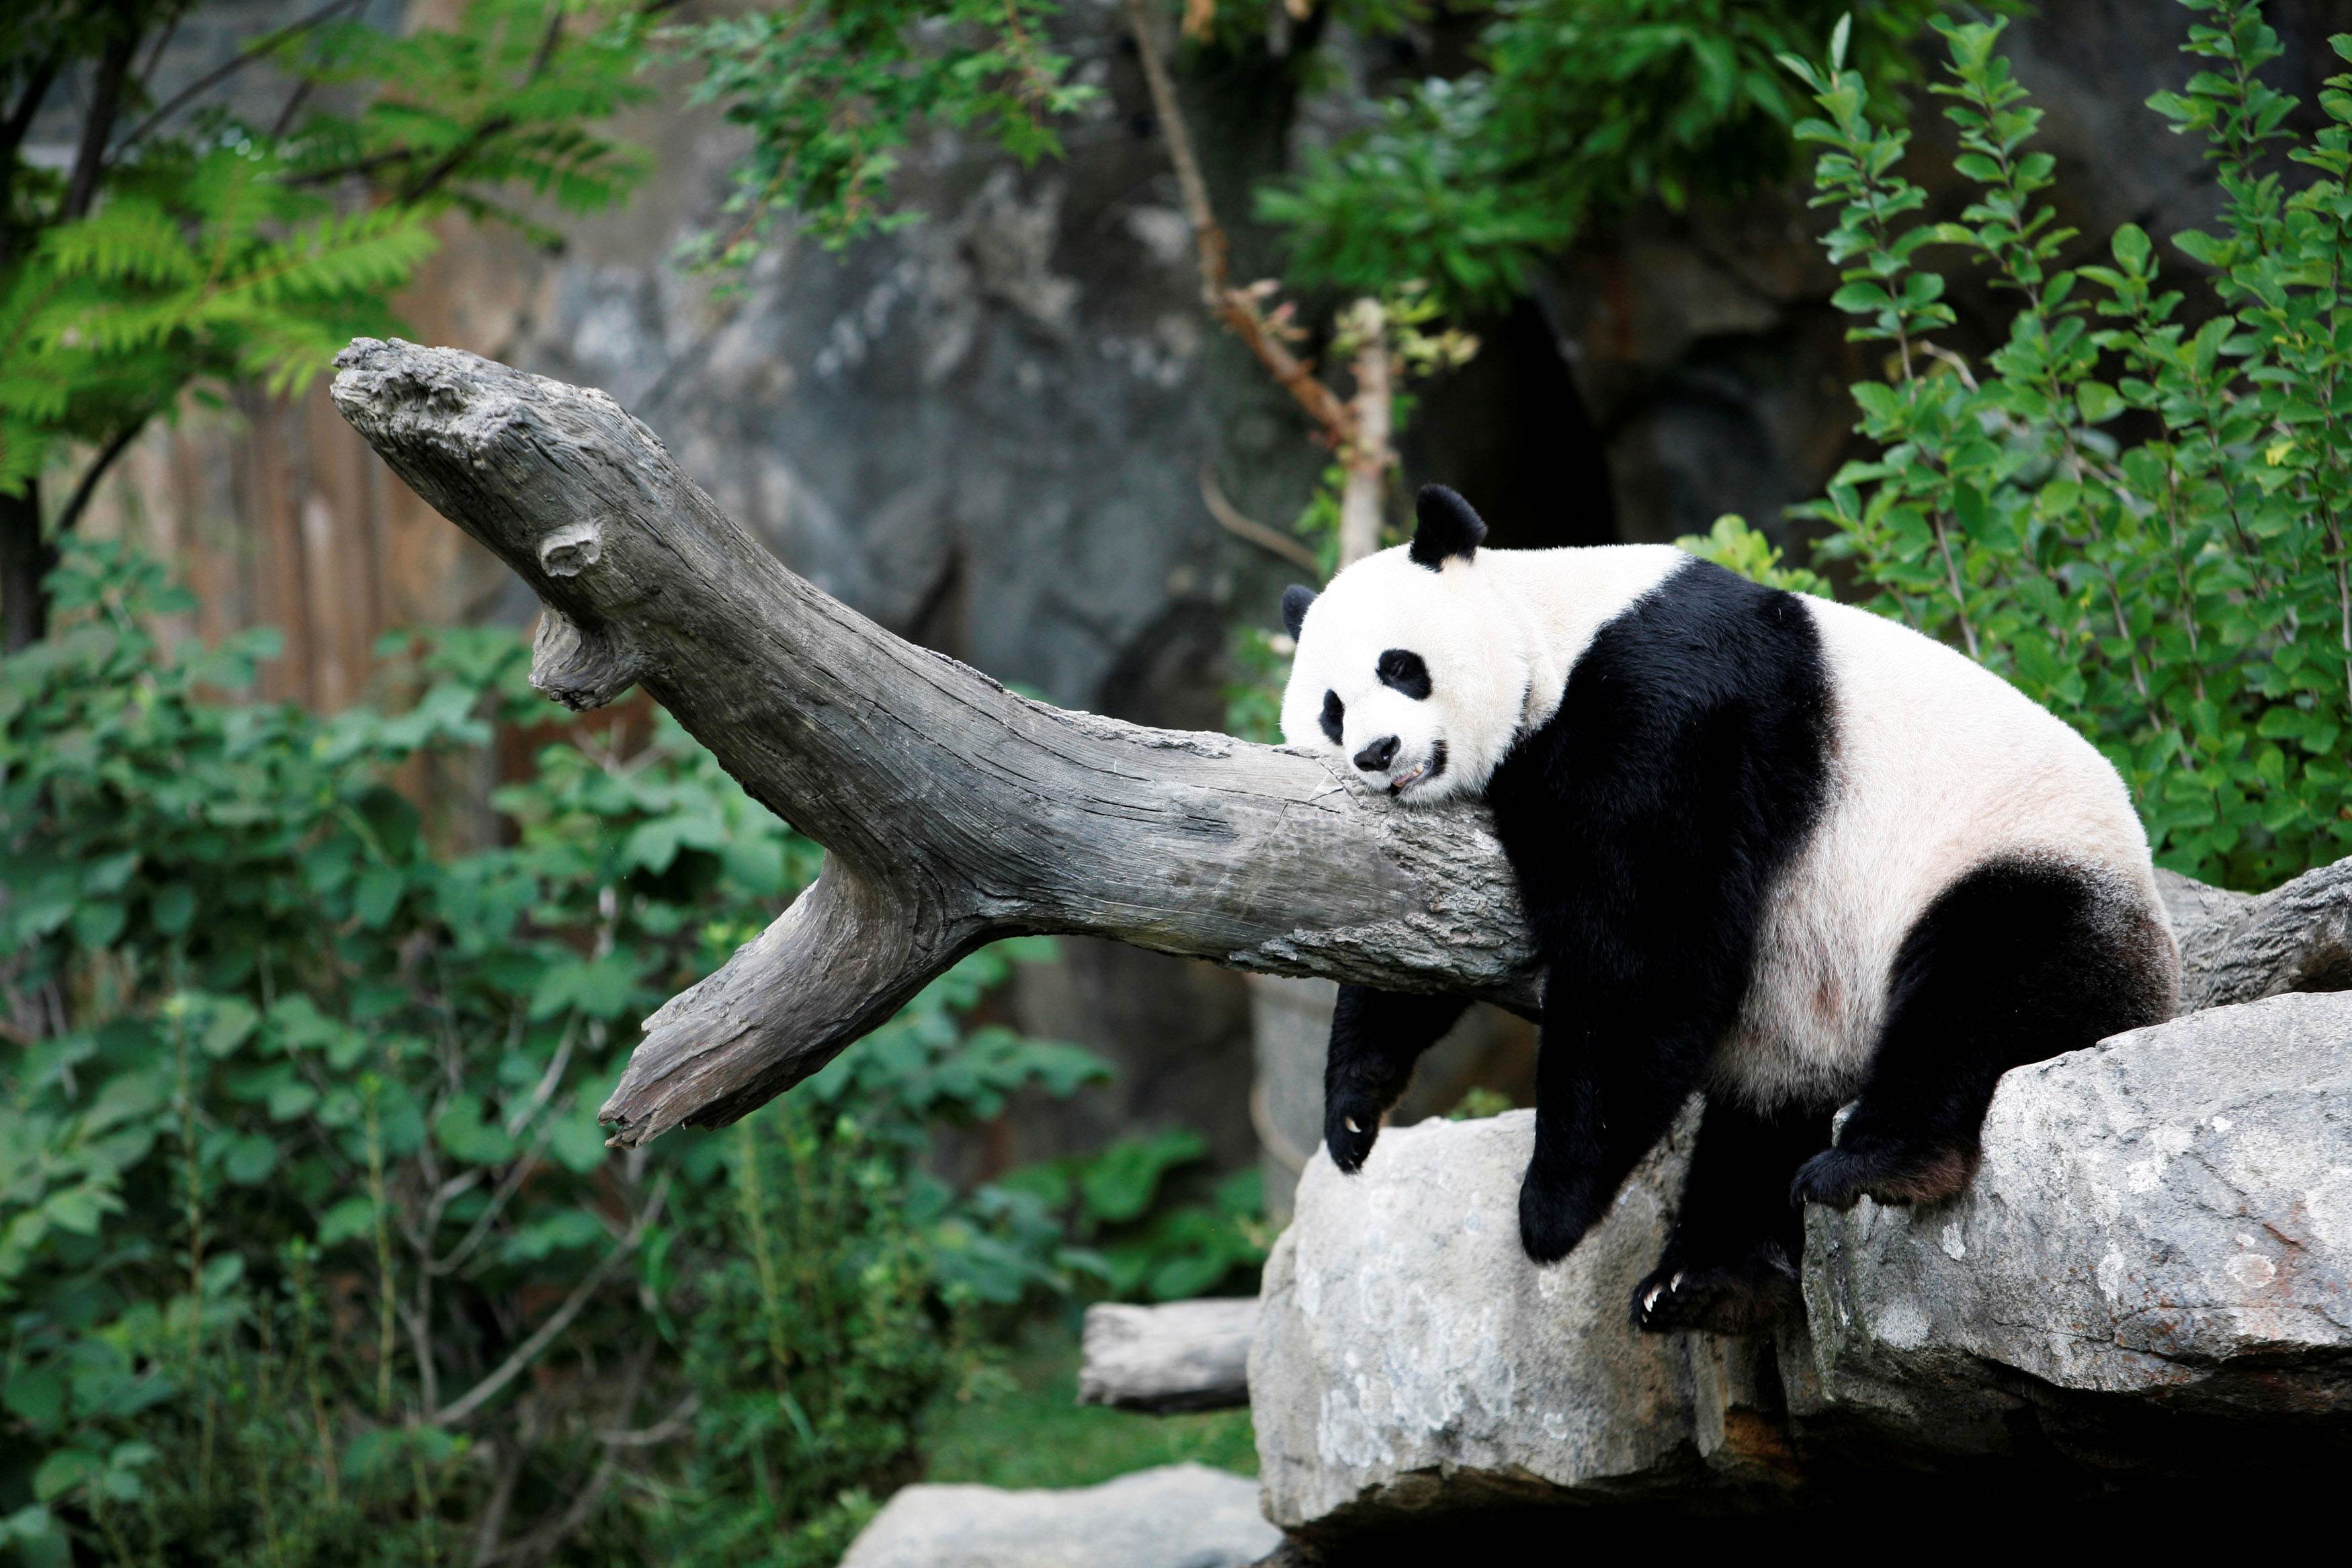 Panda gigante Mei Xiang no Zoológico Nacional de Washington, nos EUA